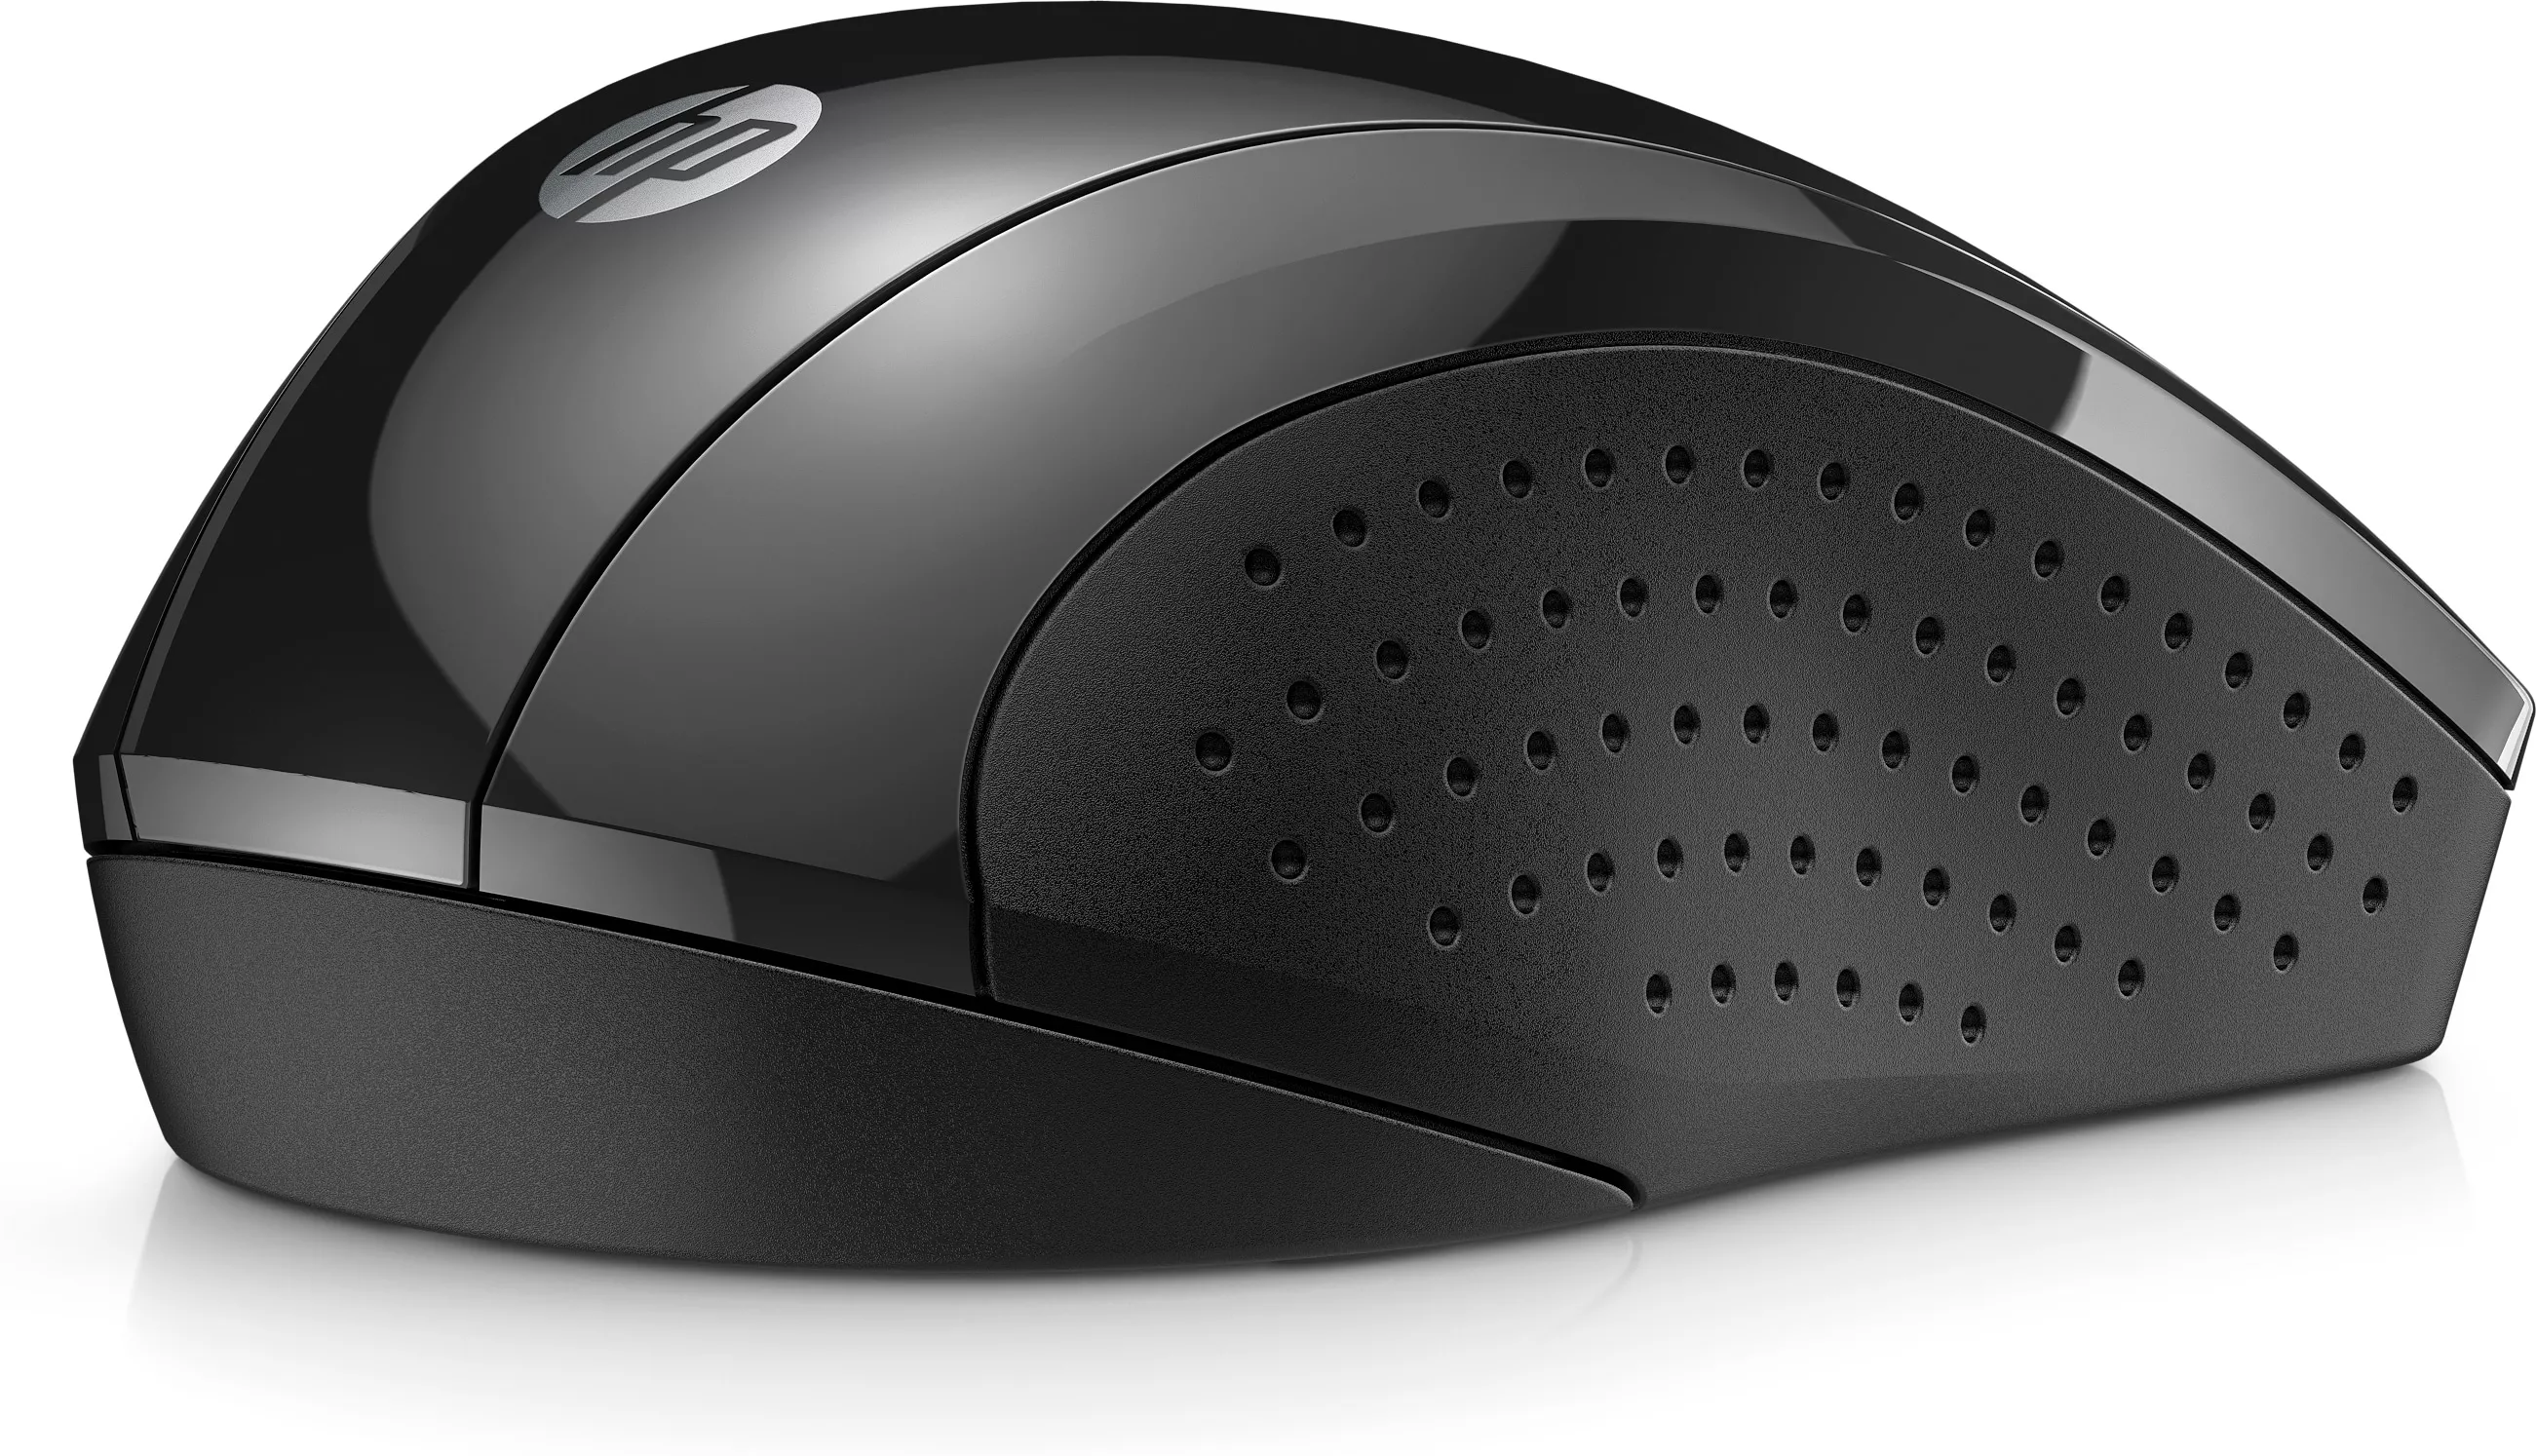 Vente HP 220 Silent Wireless Mouse HP au meilleur prix - visuel 2